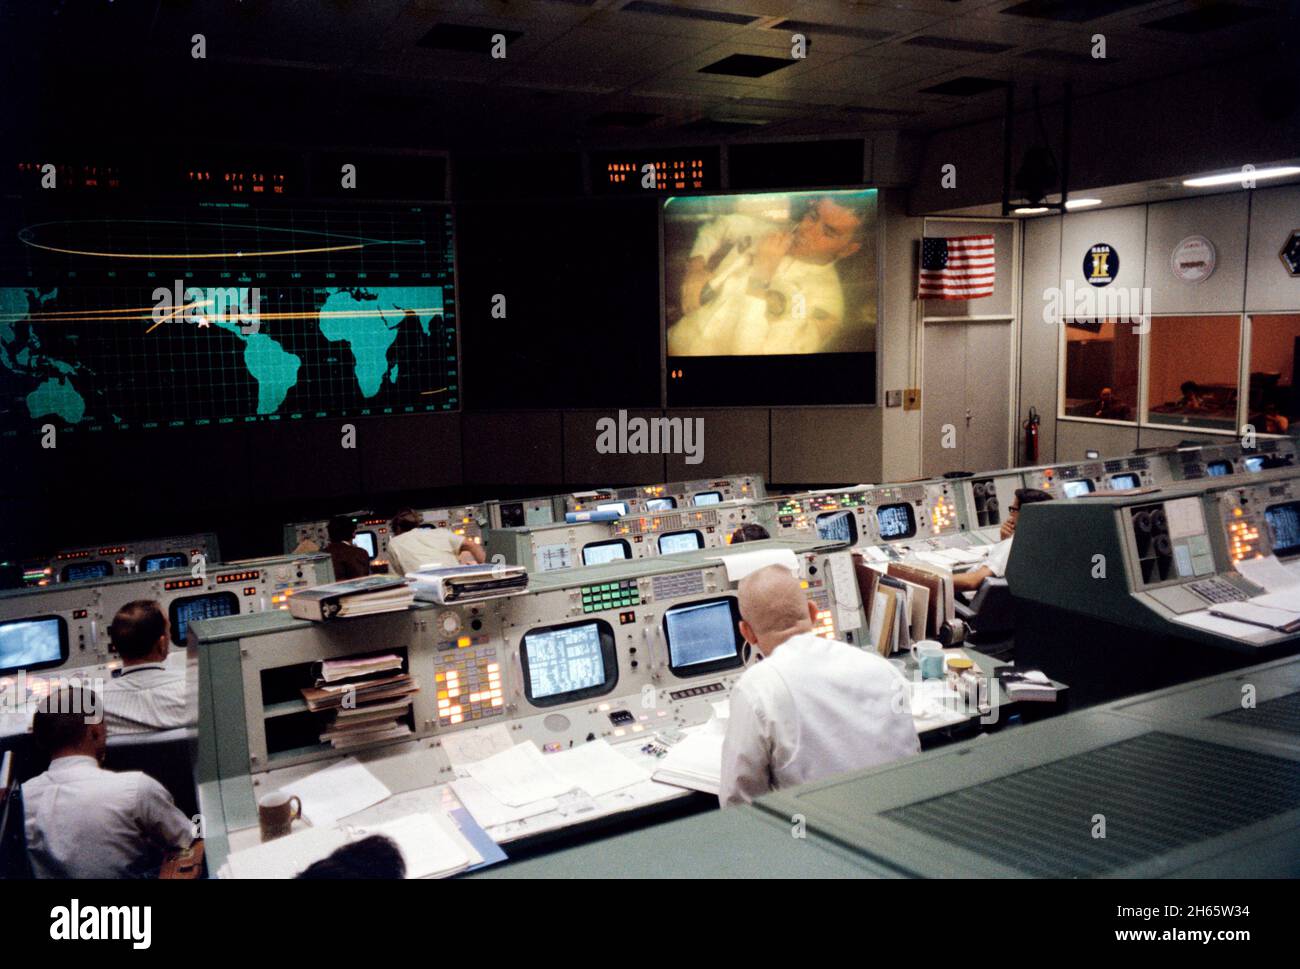 Mission Operations Control Room während der Fernsehsendung kurz vor dem Unfall von Apollo 13. Astronaut Fred Haise wird auf dem Bildschirm angezeigt. Stockfoto